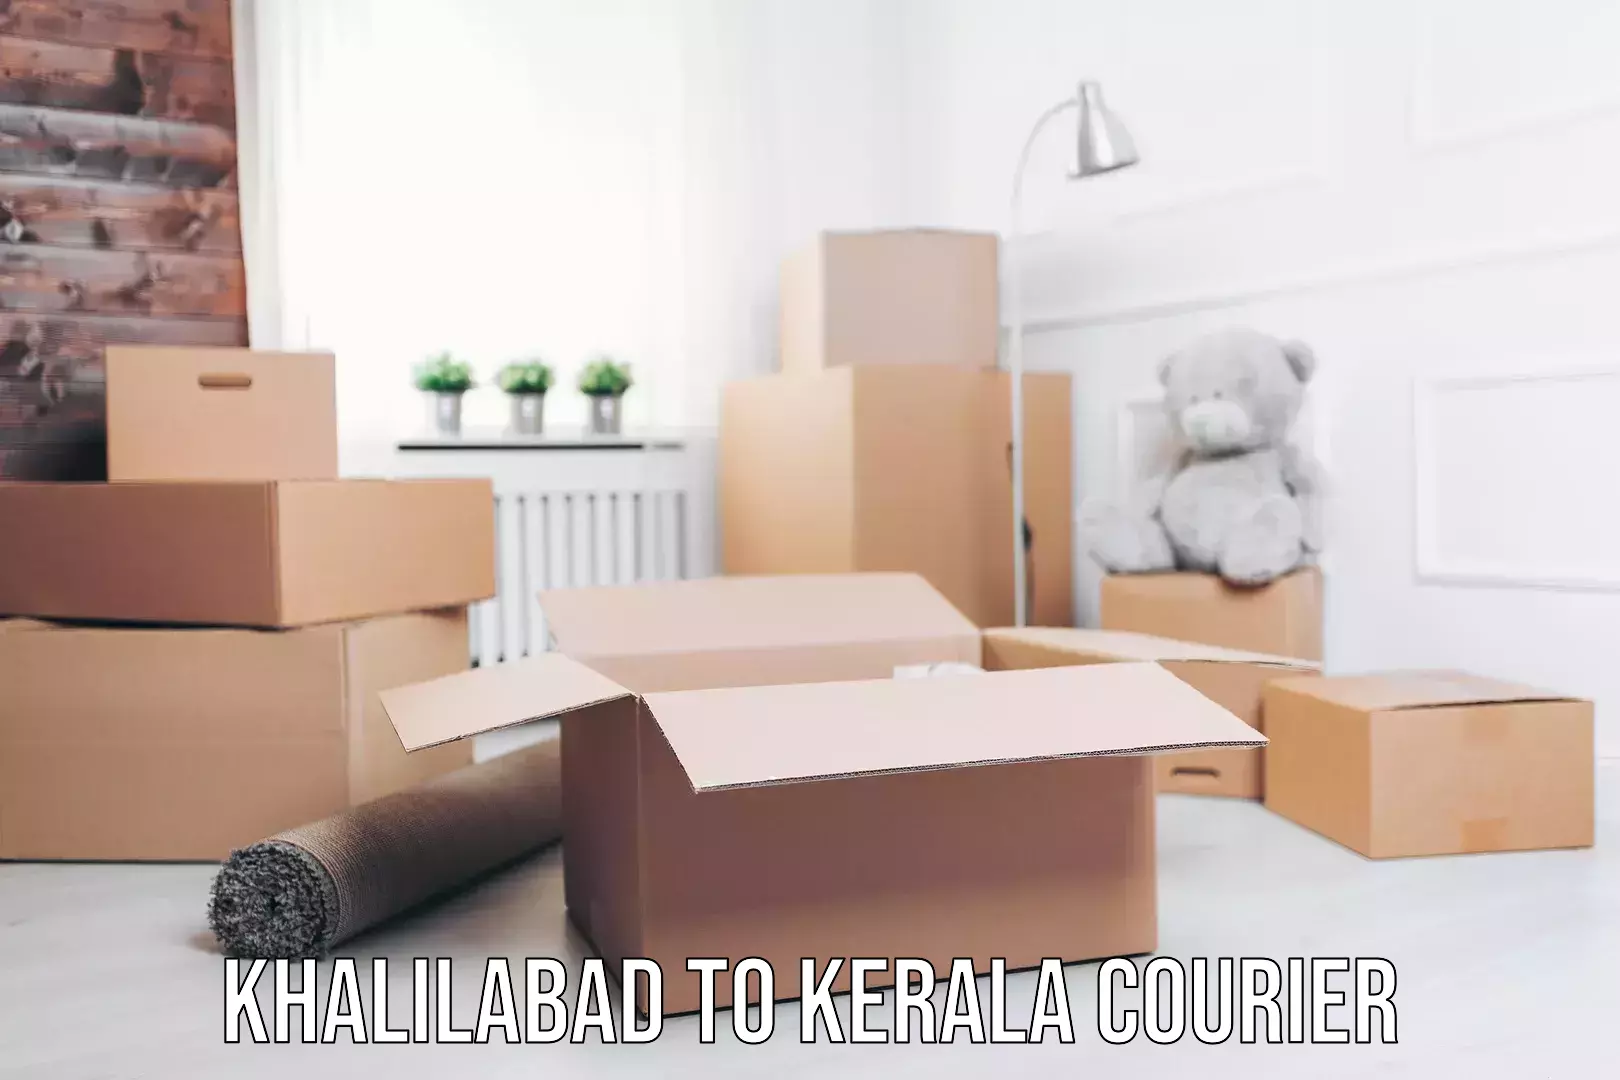 Furniture moving experts Khalilabad to Kerala